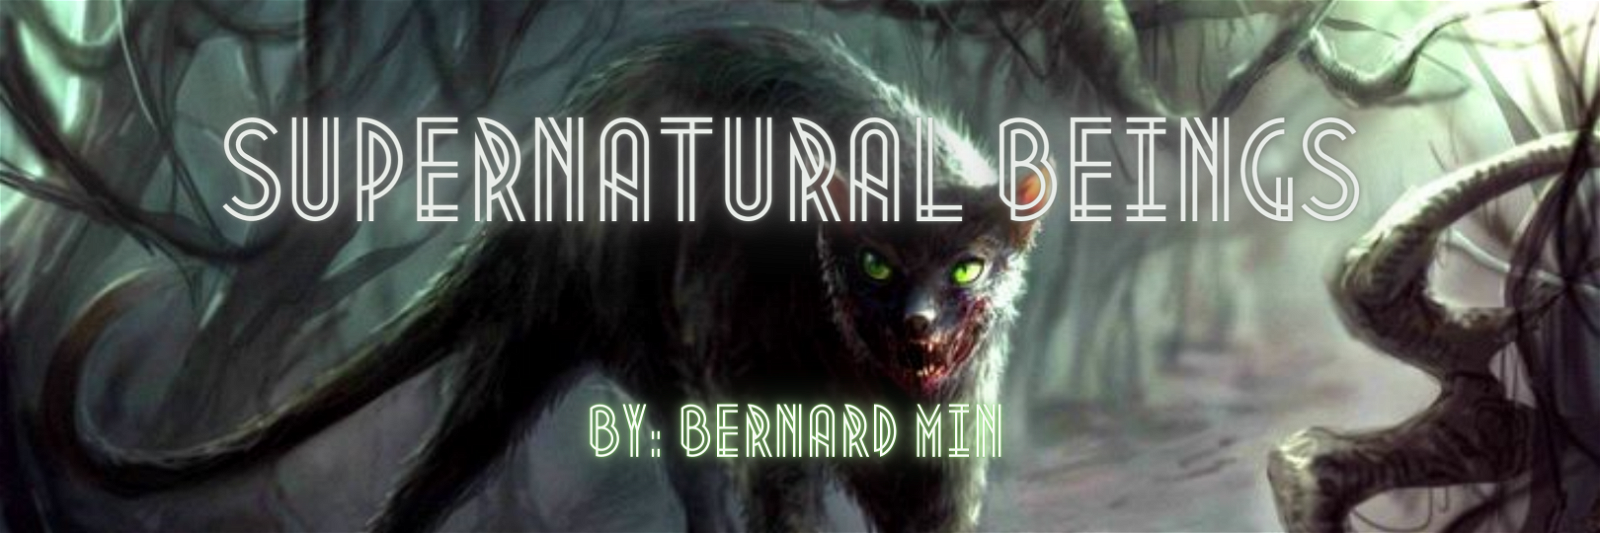 Supernatural Beings by Bernard #5